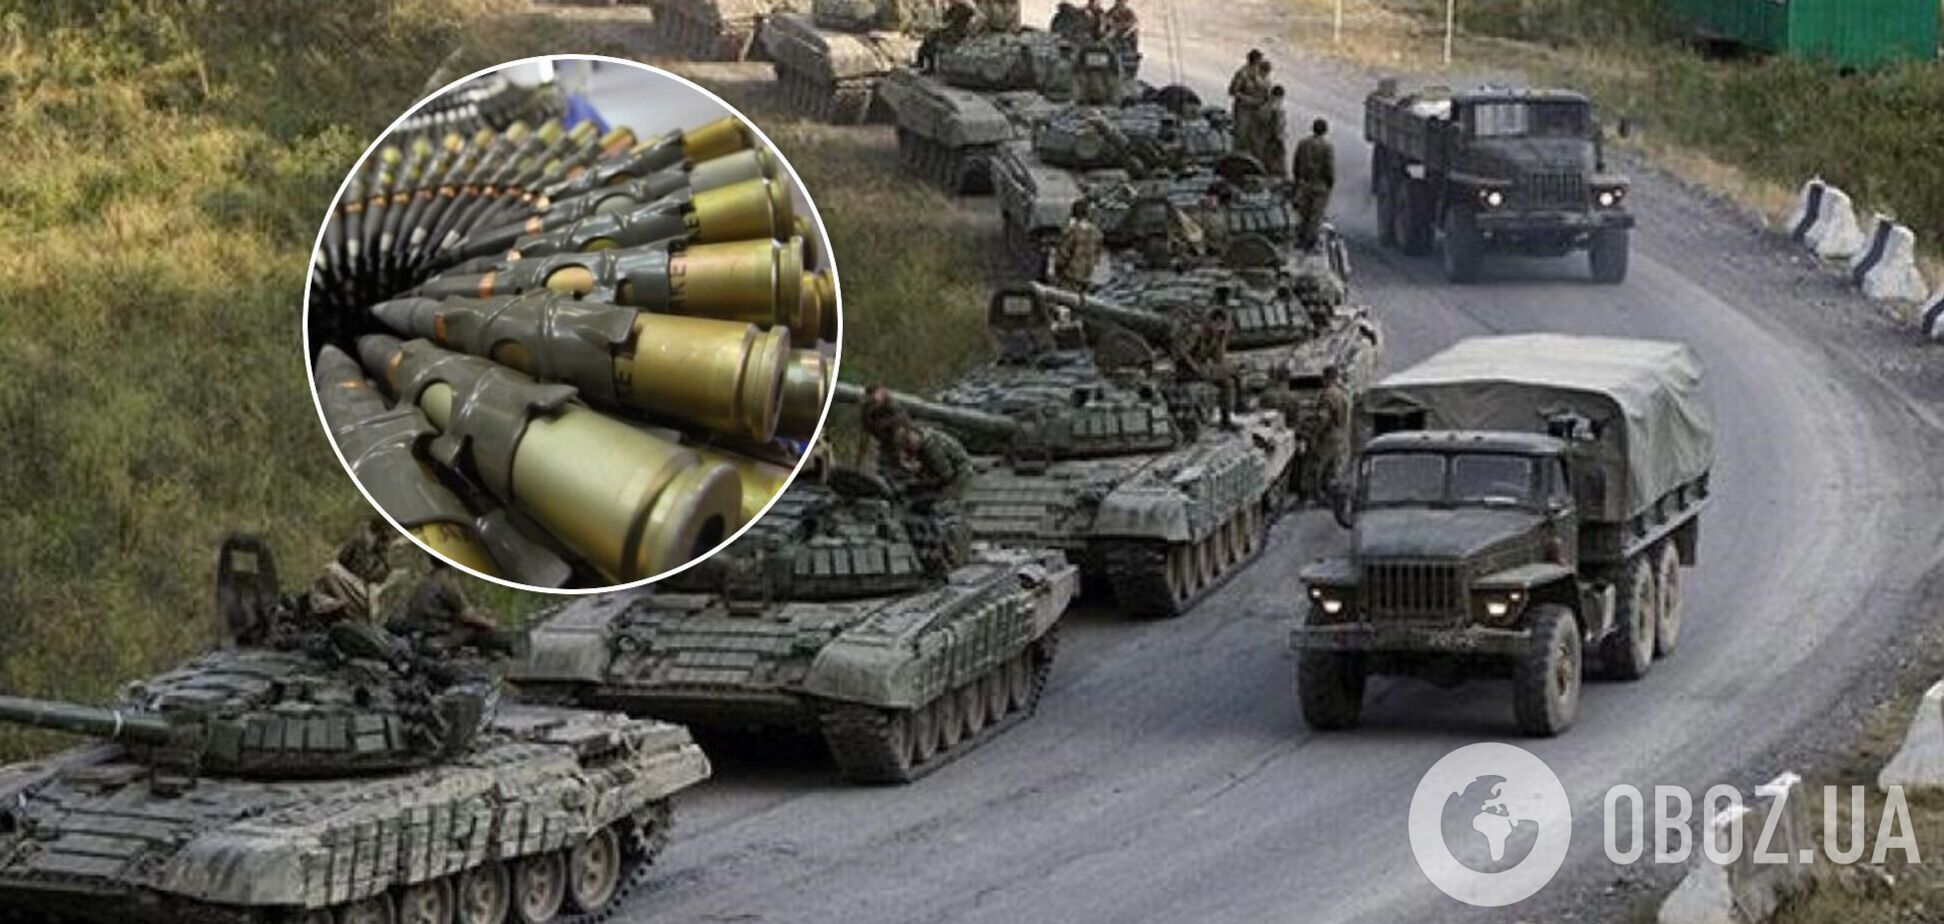 Как Россия возила снаряды на Донбасс. Расследование